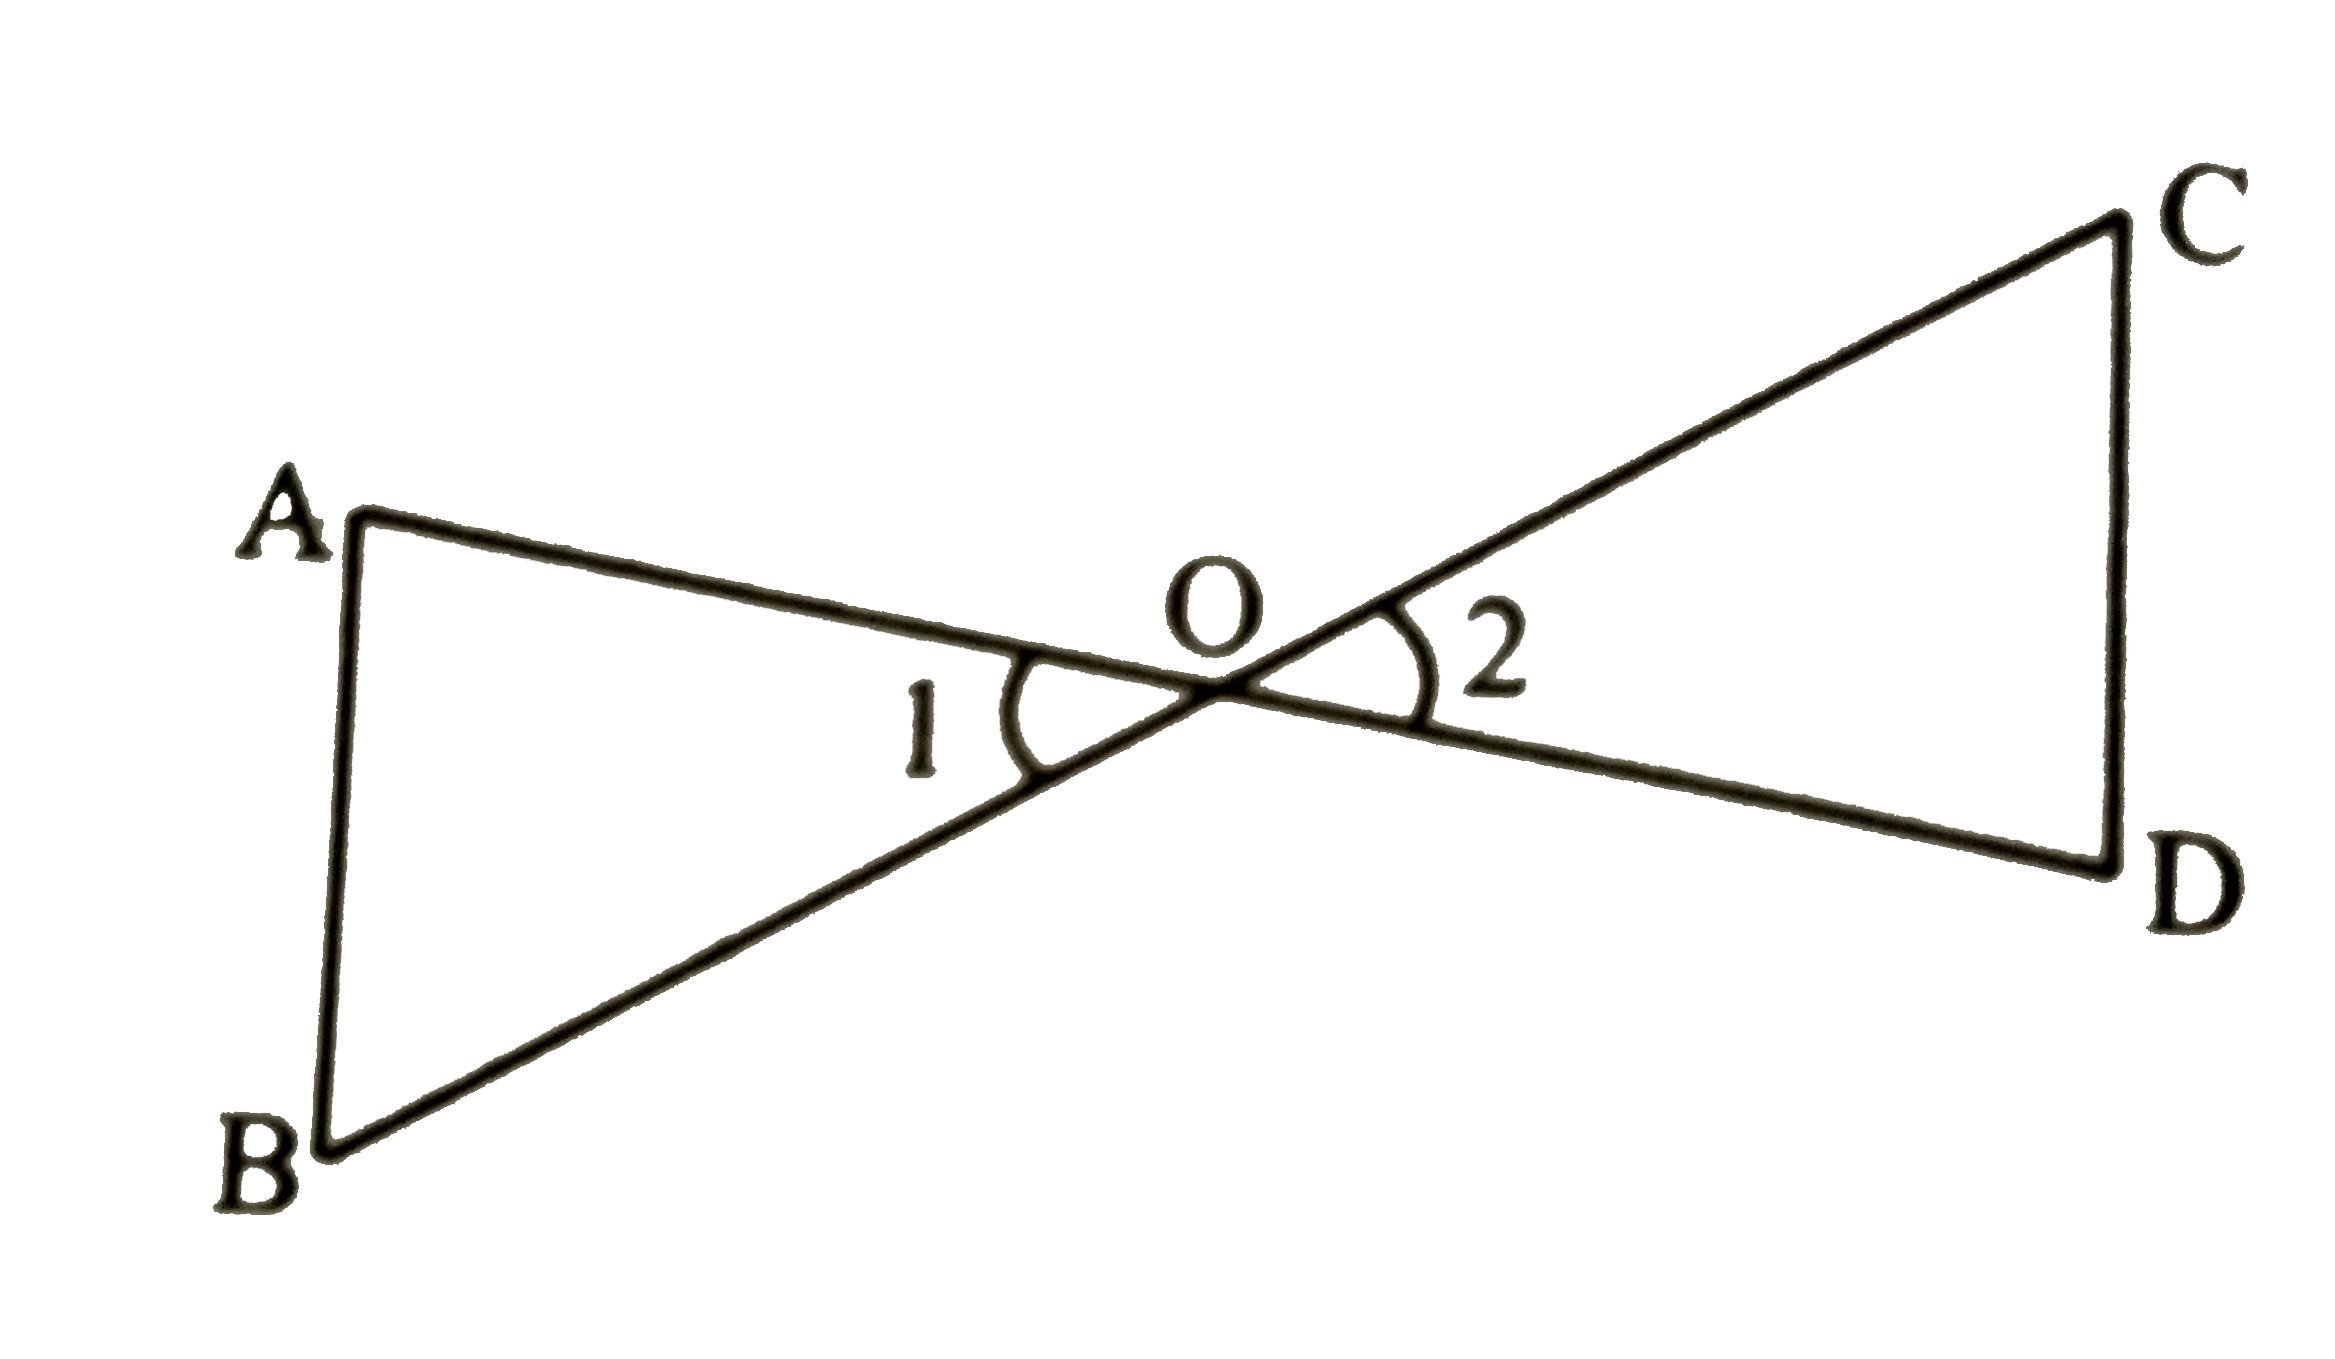 दी गई आकृति में (OA)/(OC) = (OD)/(OB)  है तो सिद्ध कीजिए कि angle A = angleC  तथा  angleB = angle D